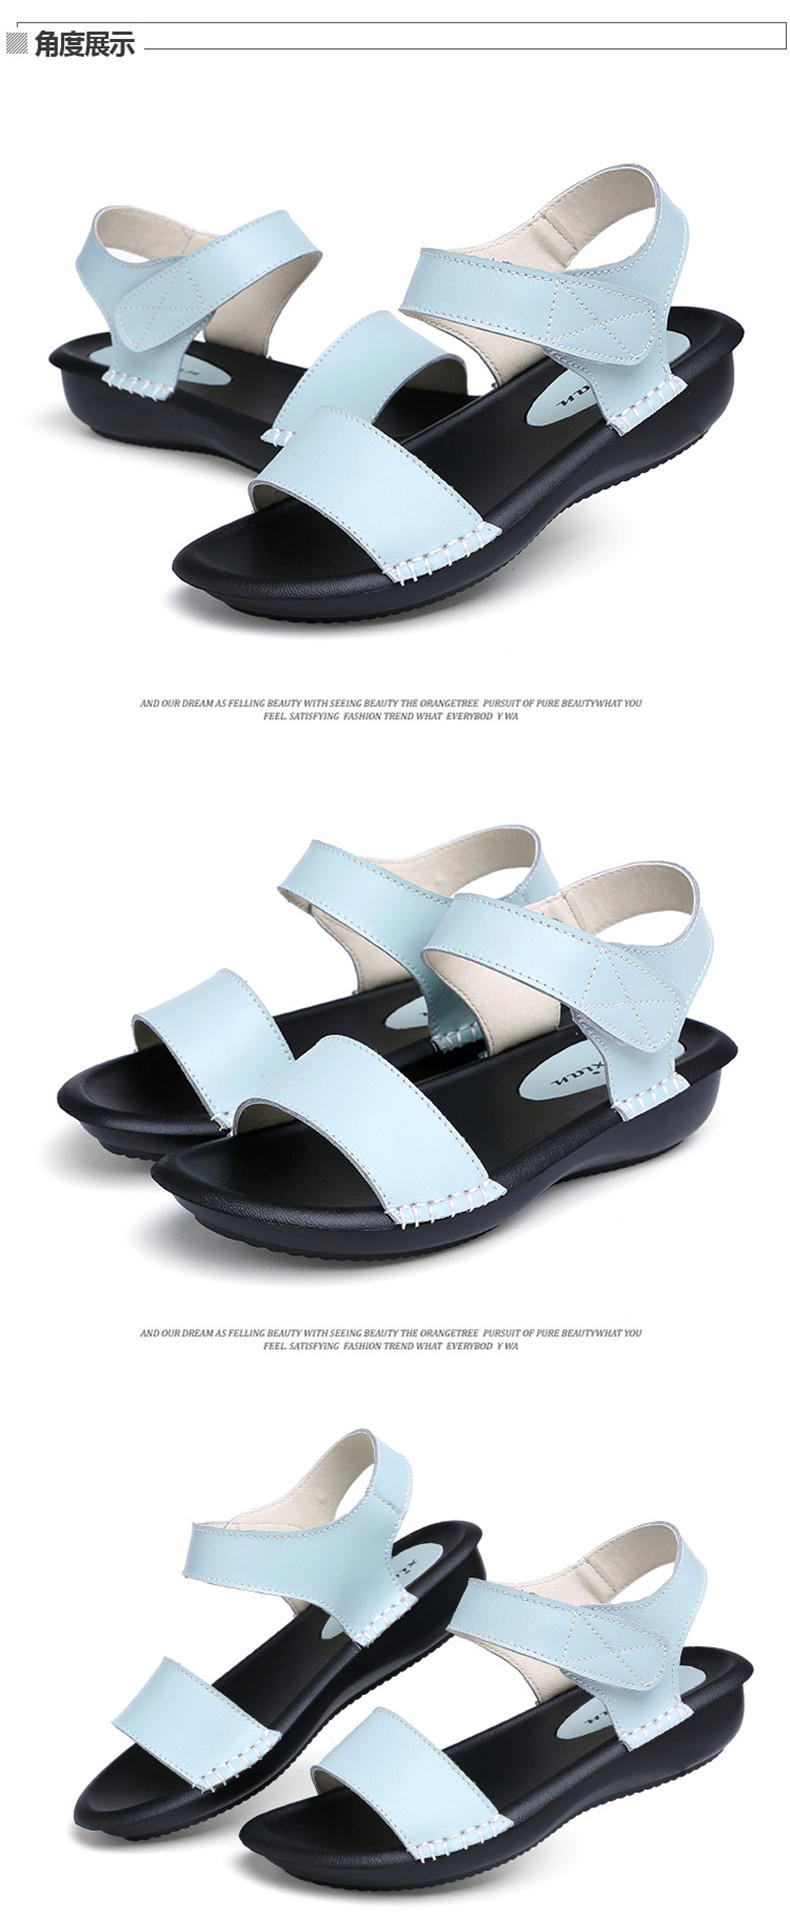 夏季韩版真皮凉鞋平底鞋皮带扣松糕底女鞋新款中跟露趾鞋